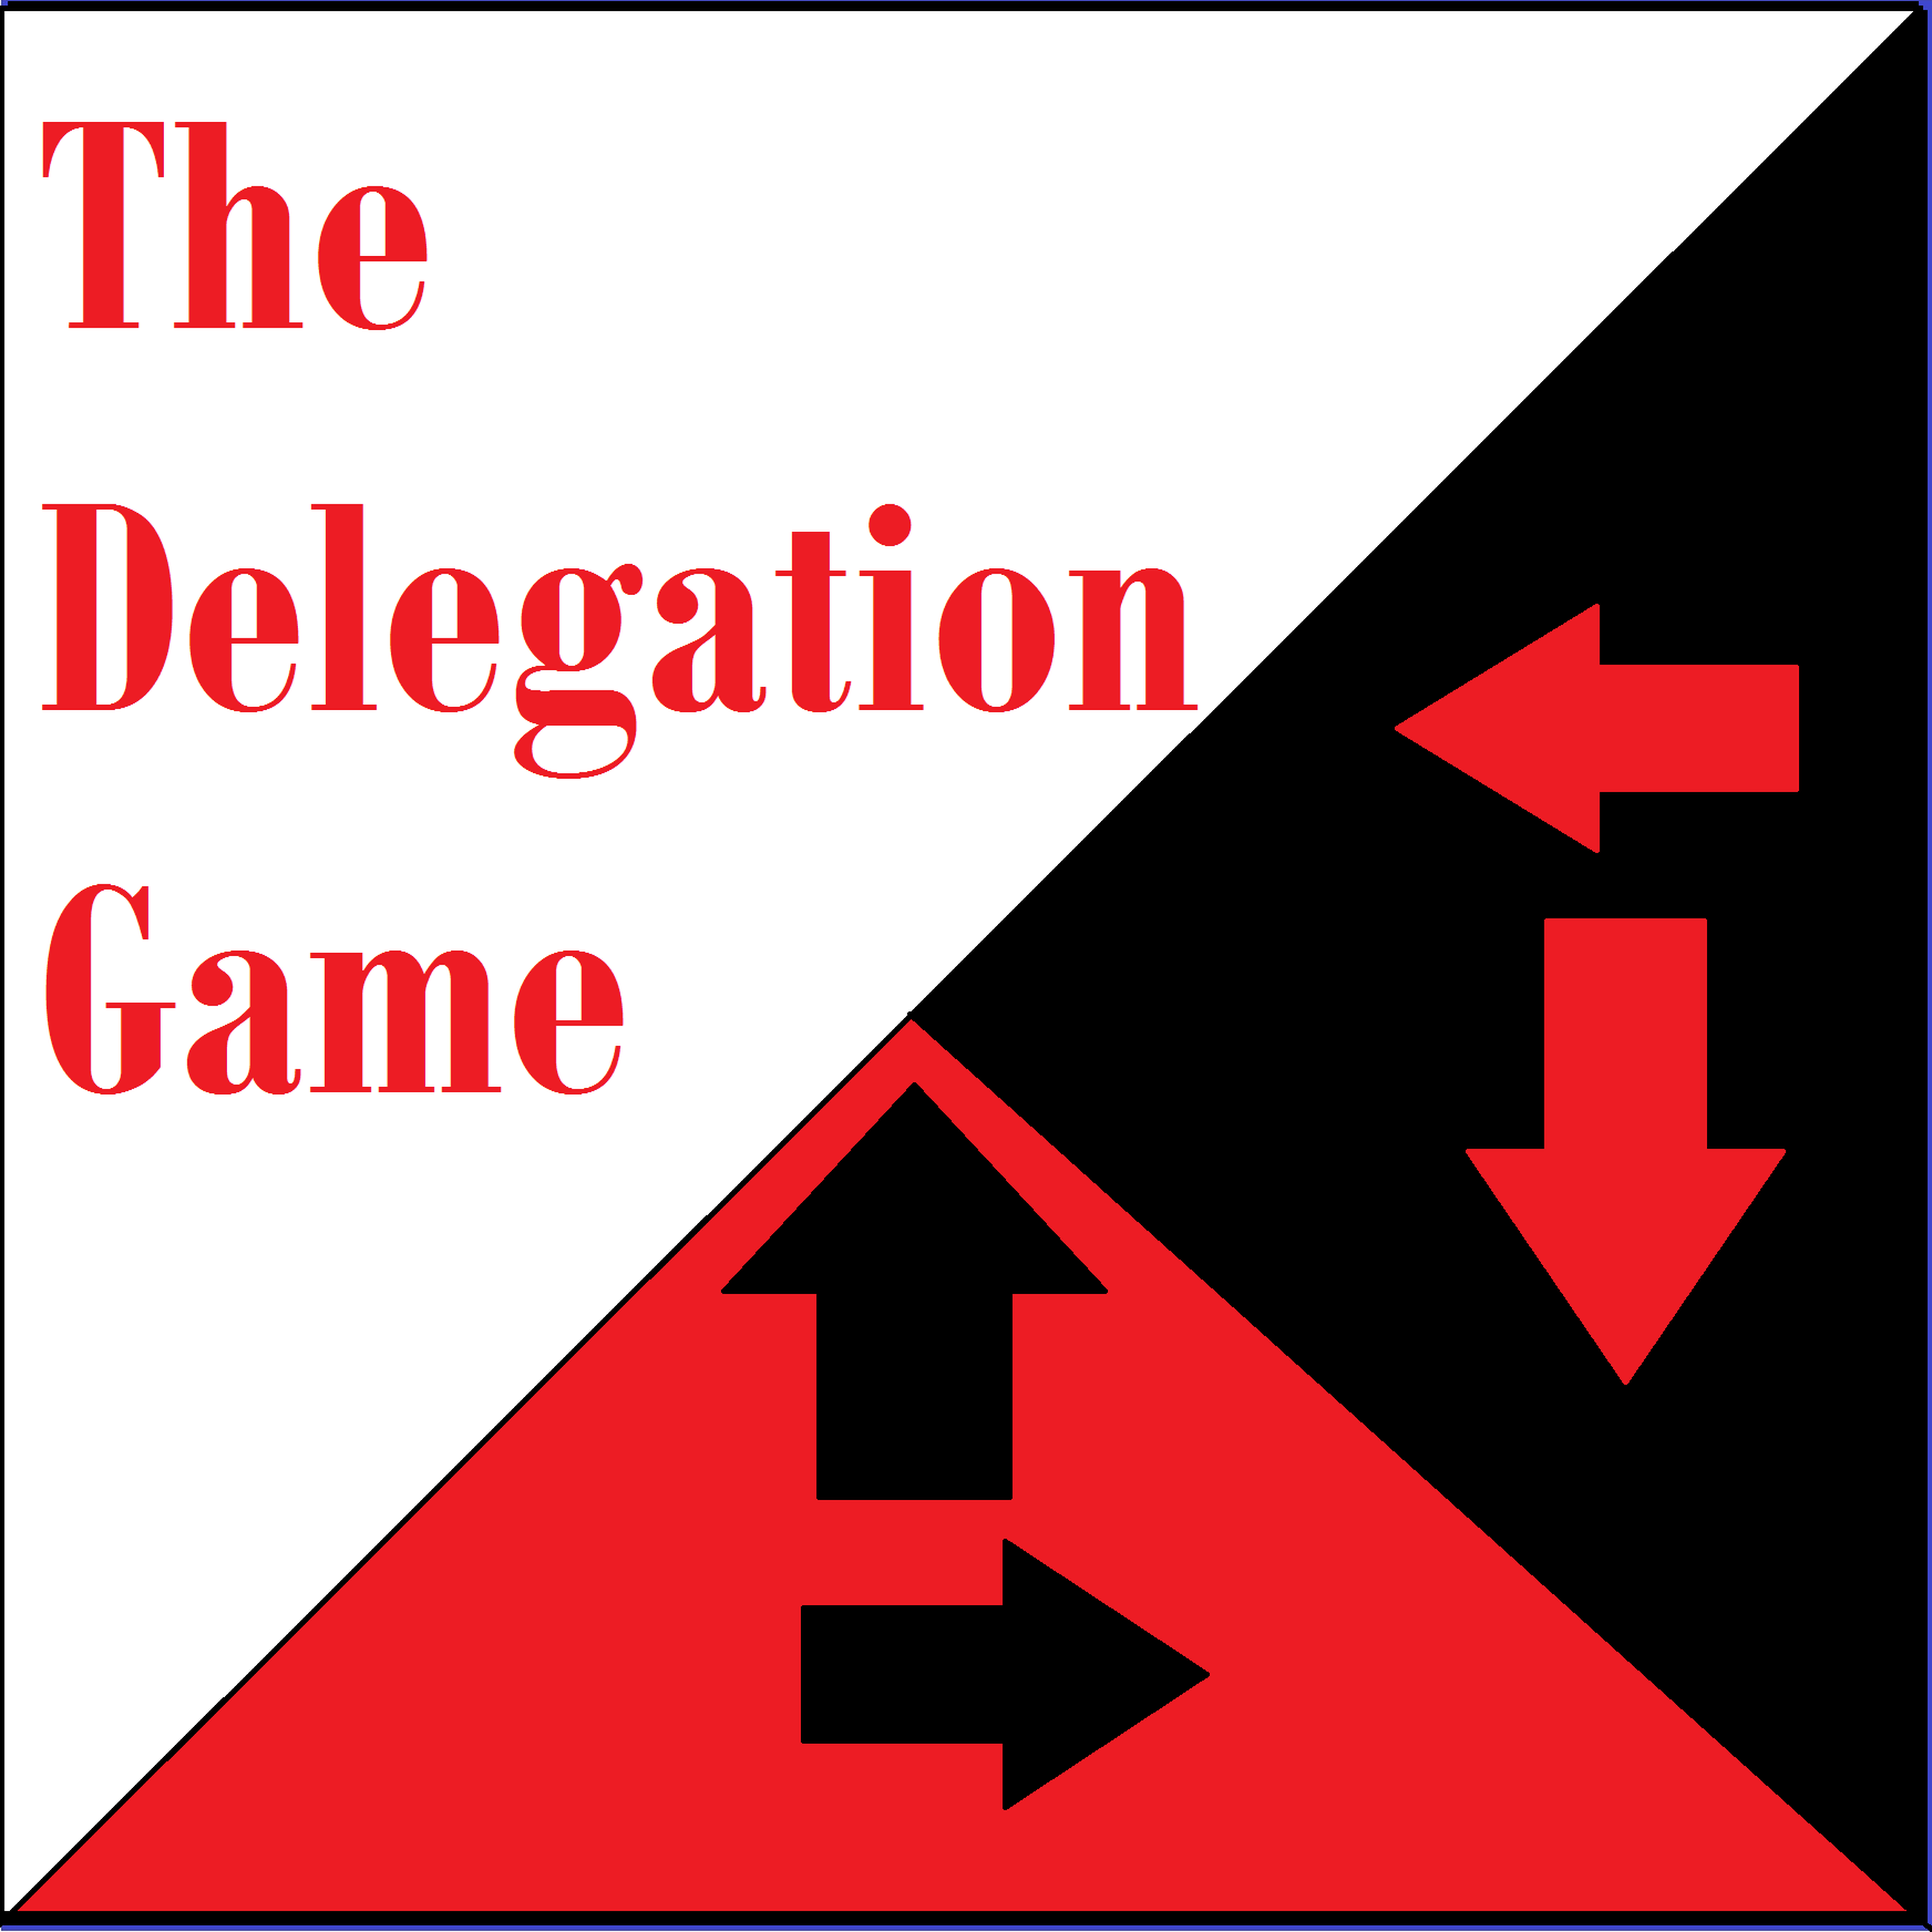 Delegation Game #12: The Tiger Still Roars!